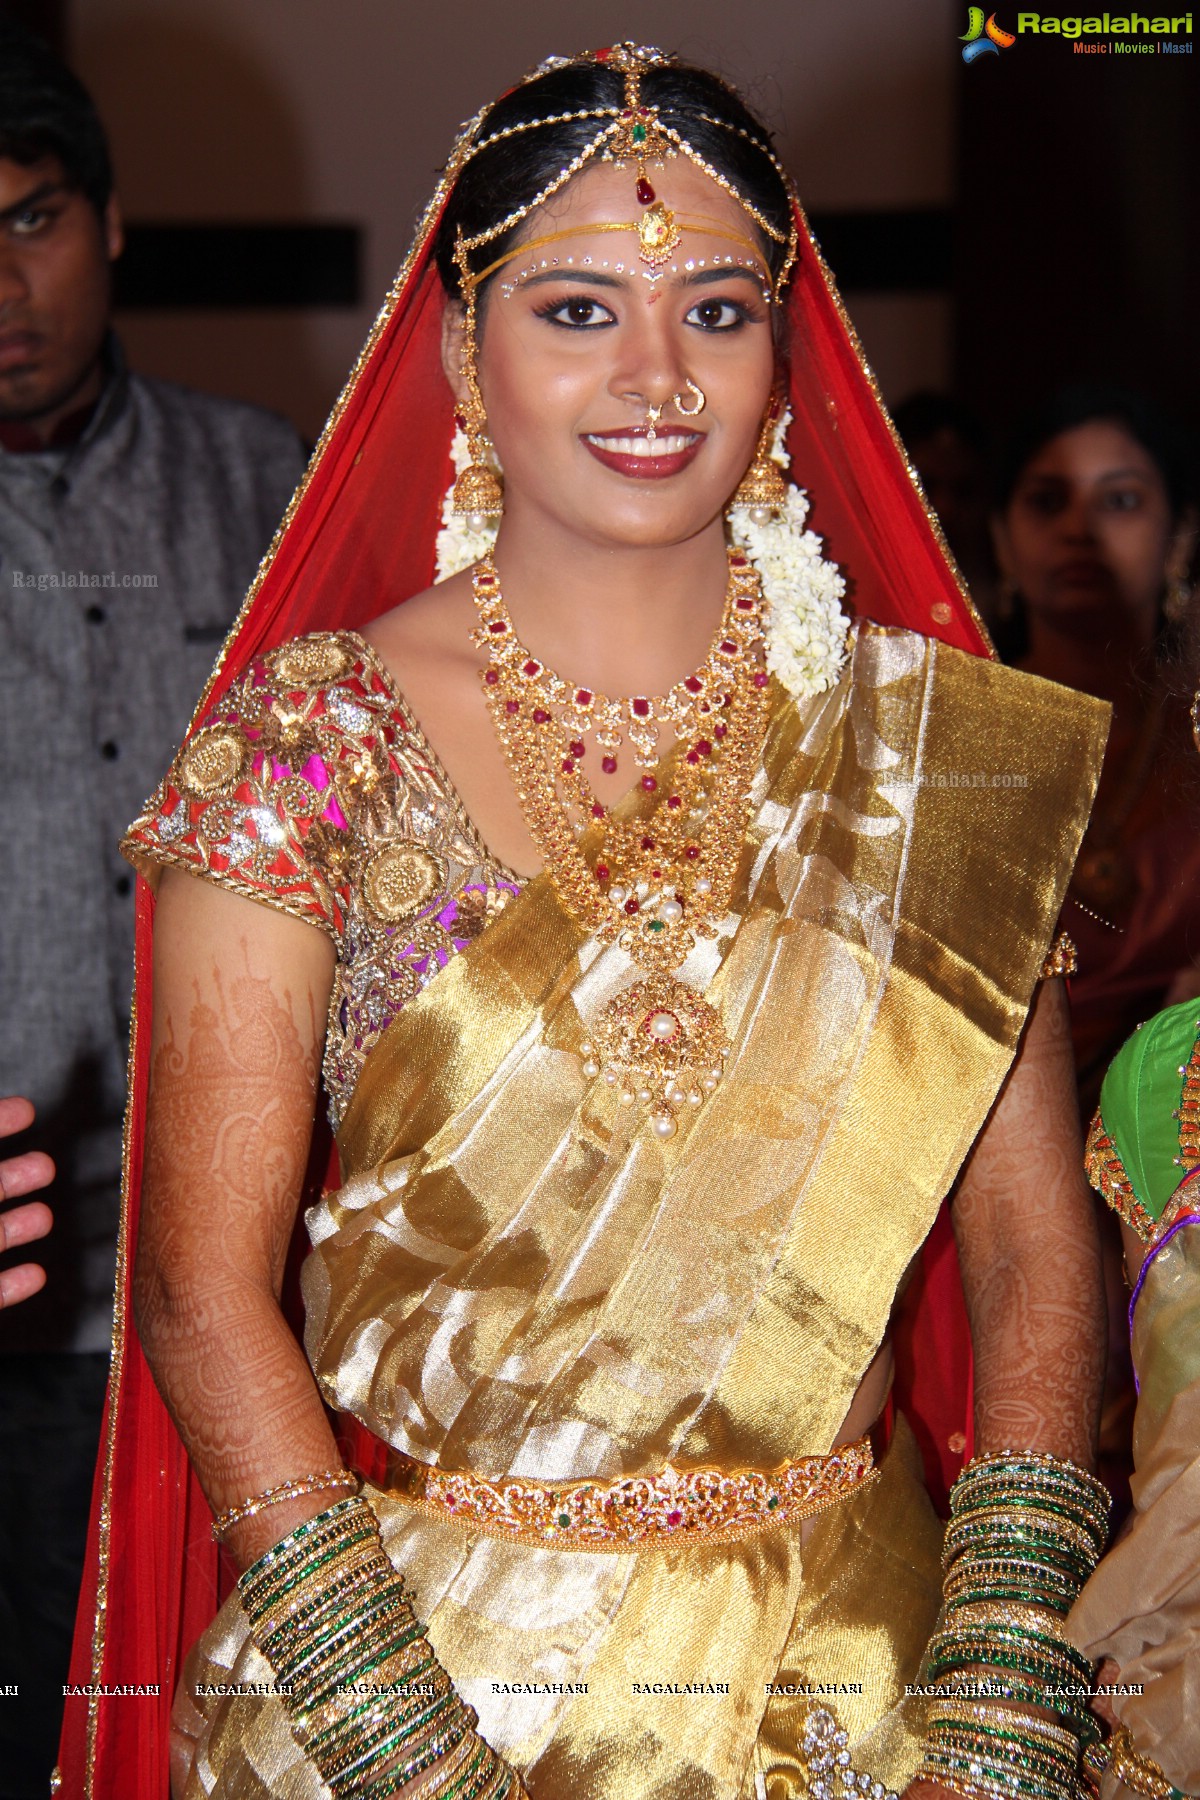 Bingi Sainath Goud-Parkala Anusha Goud Wedding